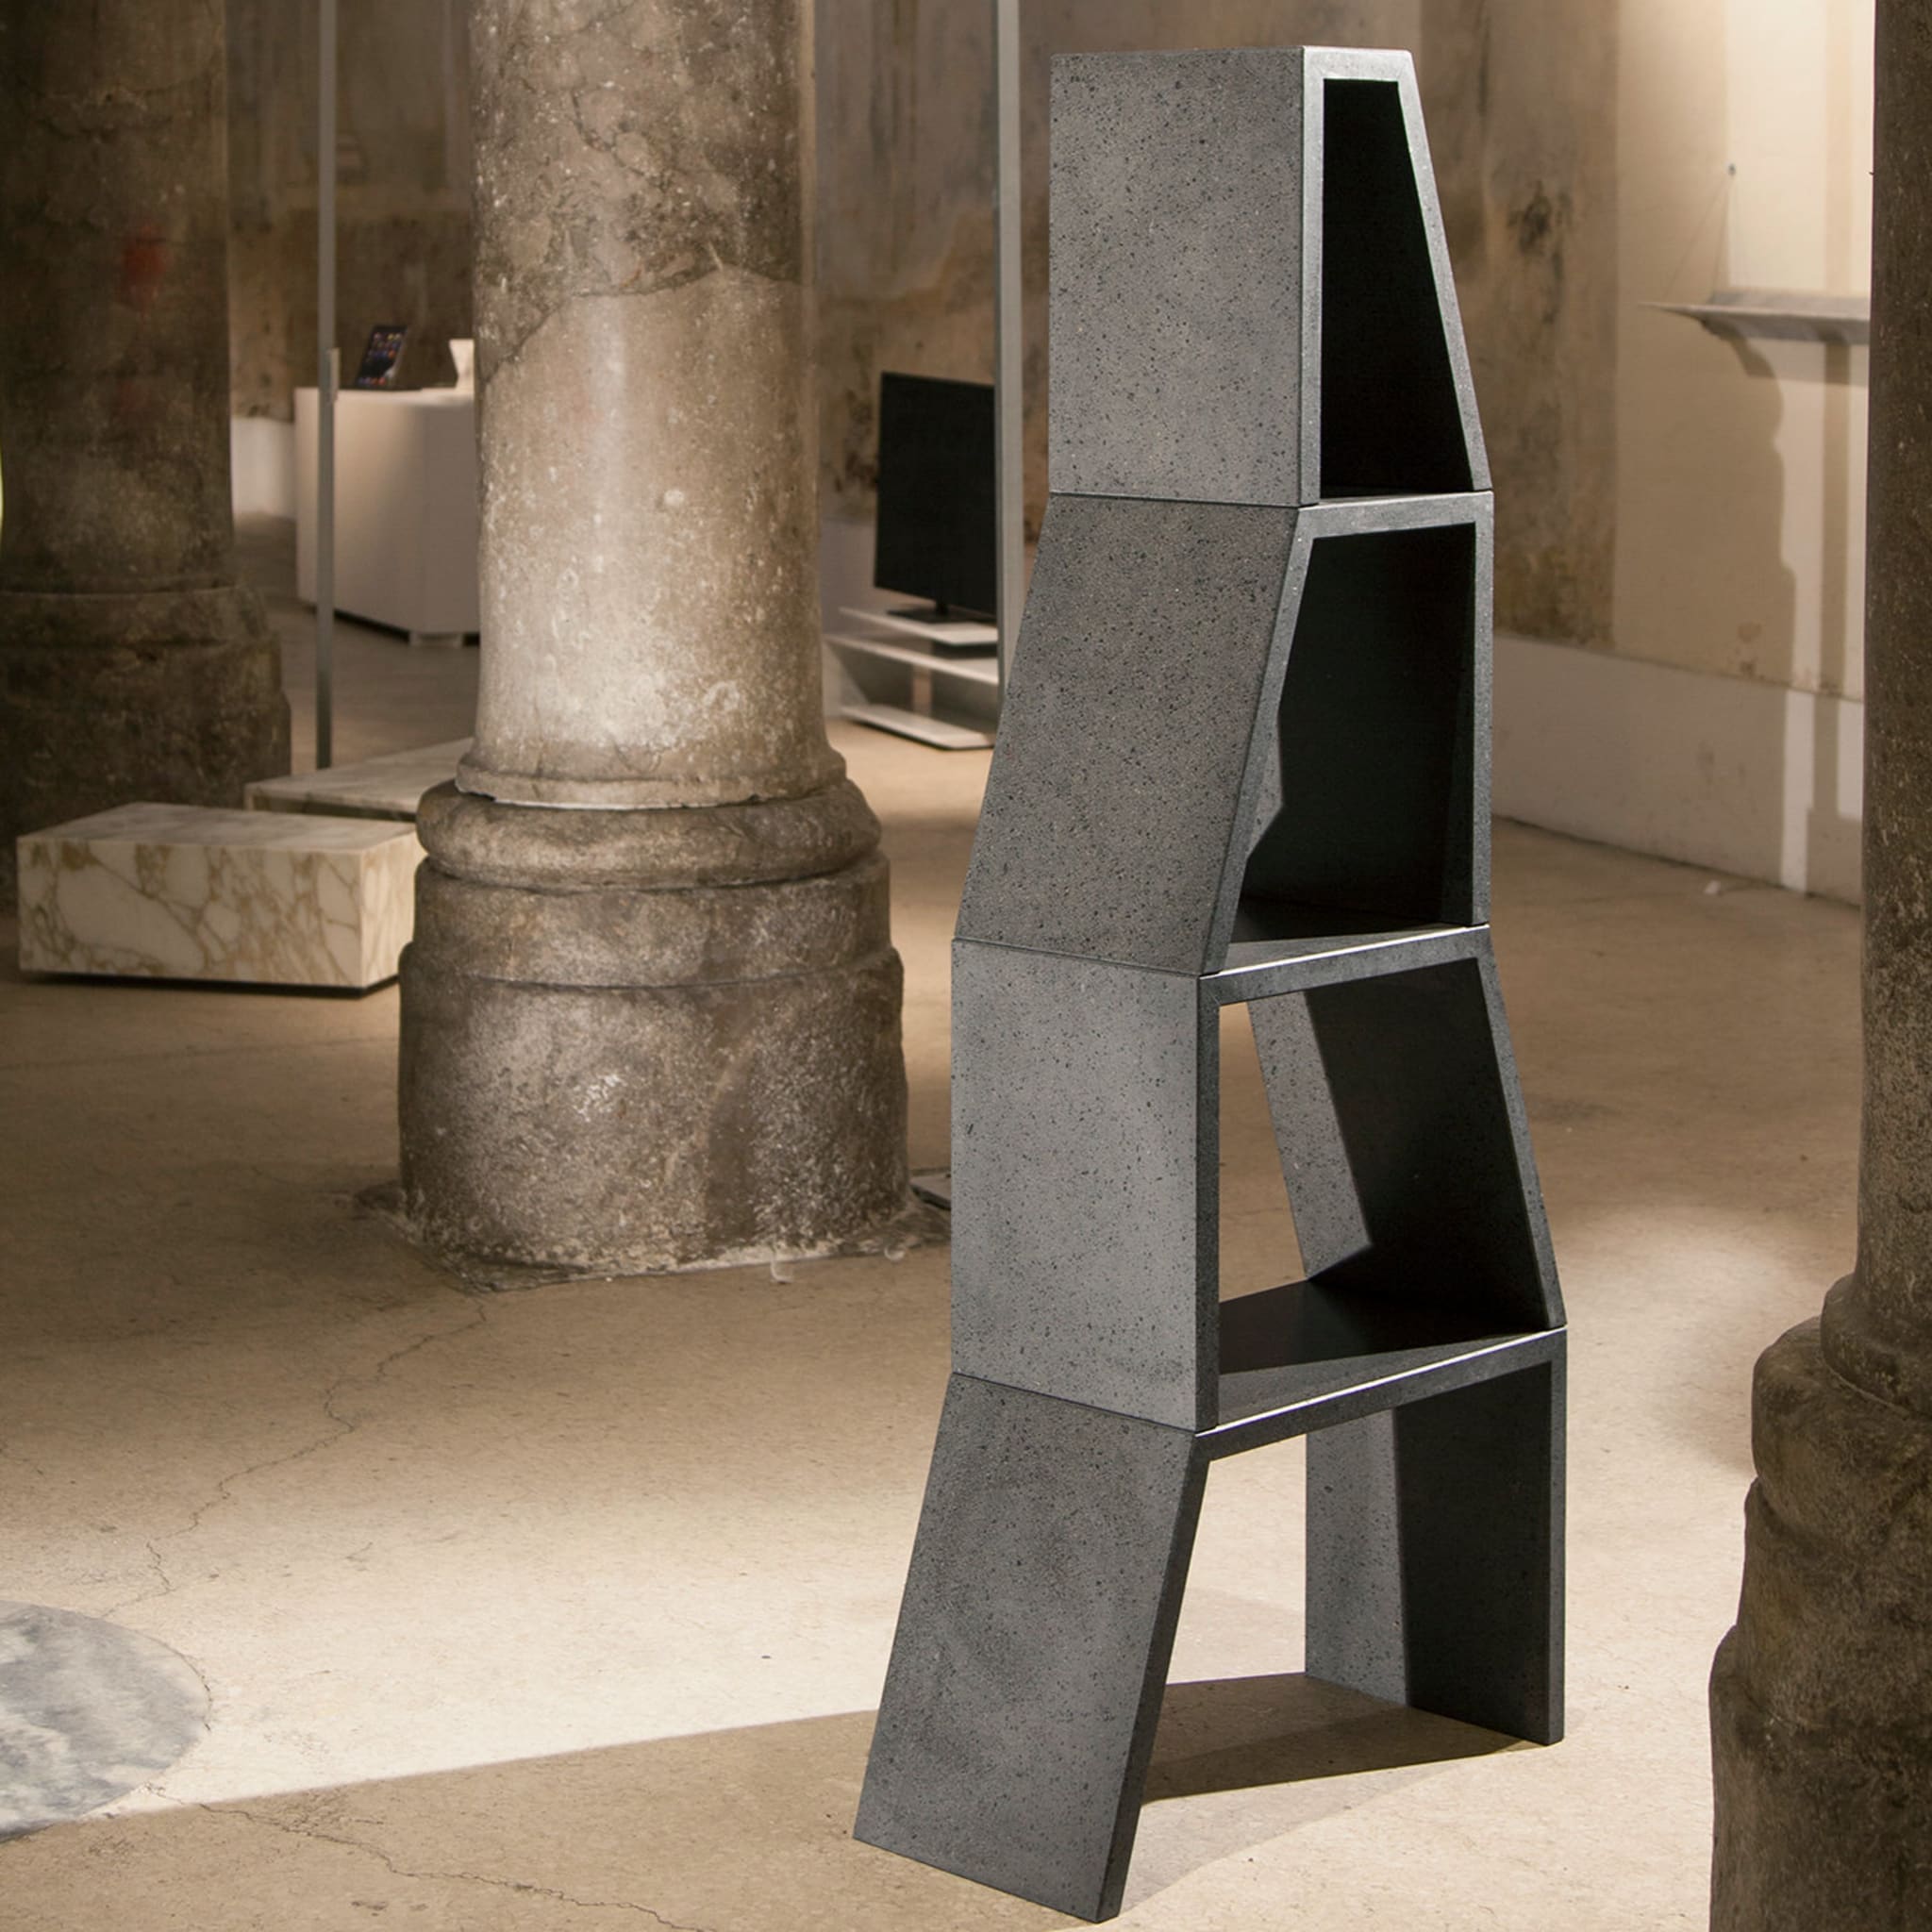 Carlino Bookcase by Claudia Carlino - Alternative view 2